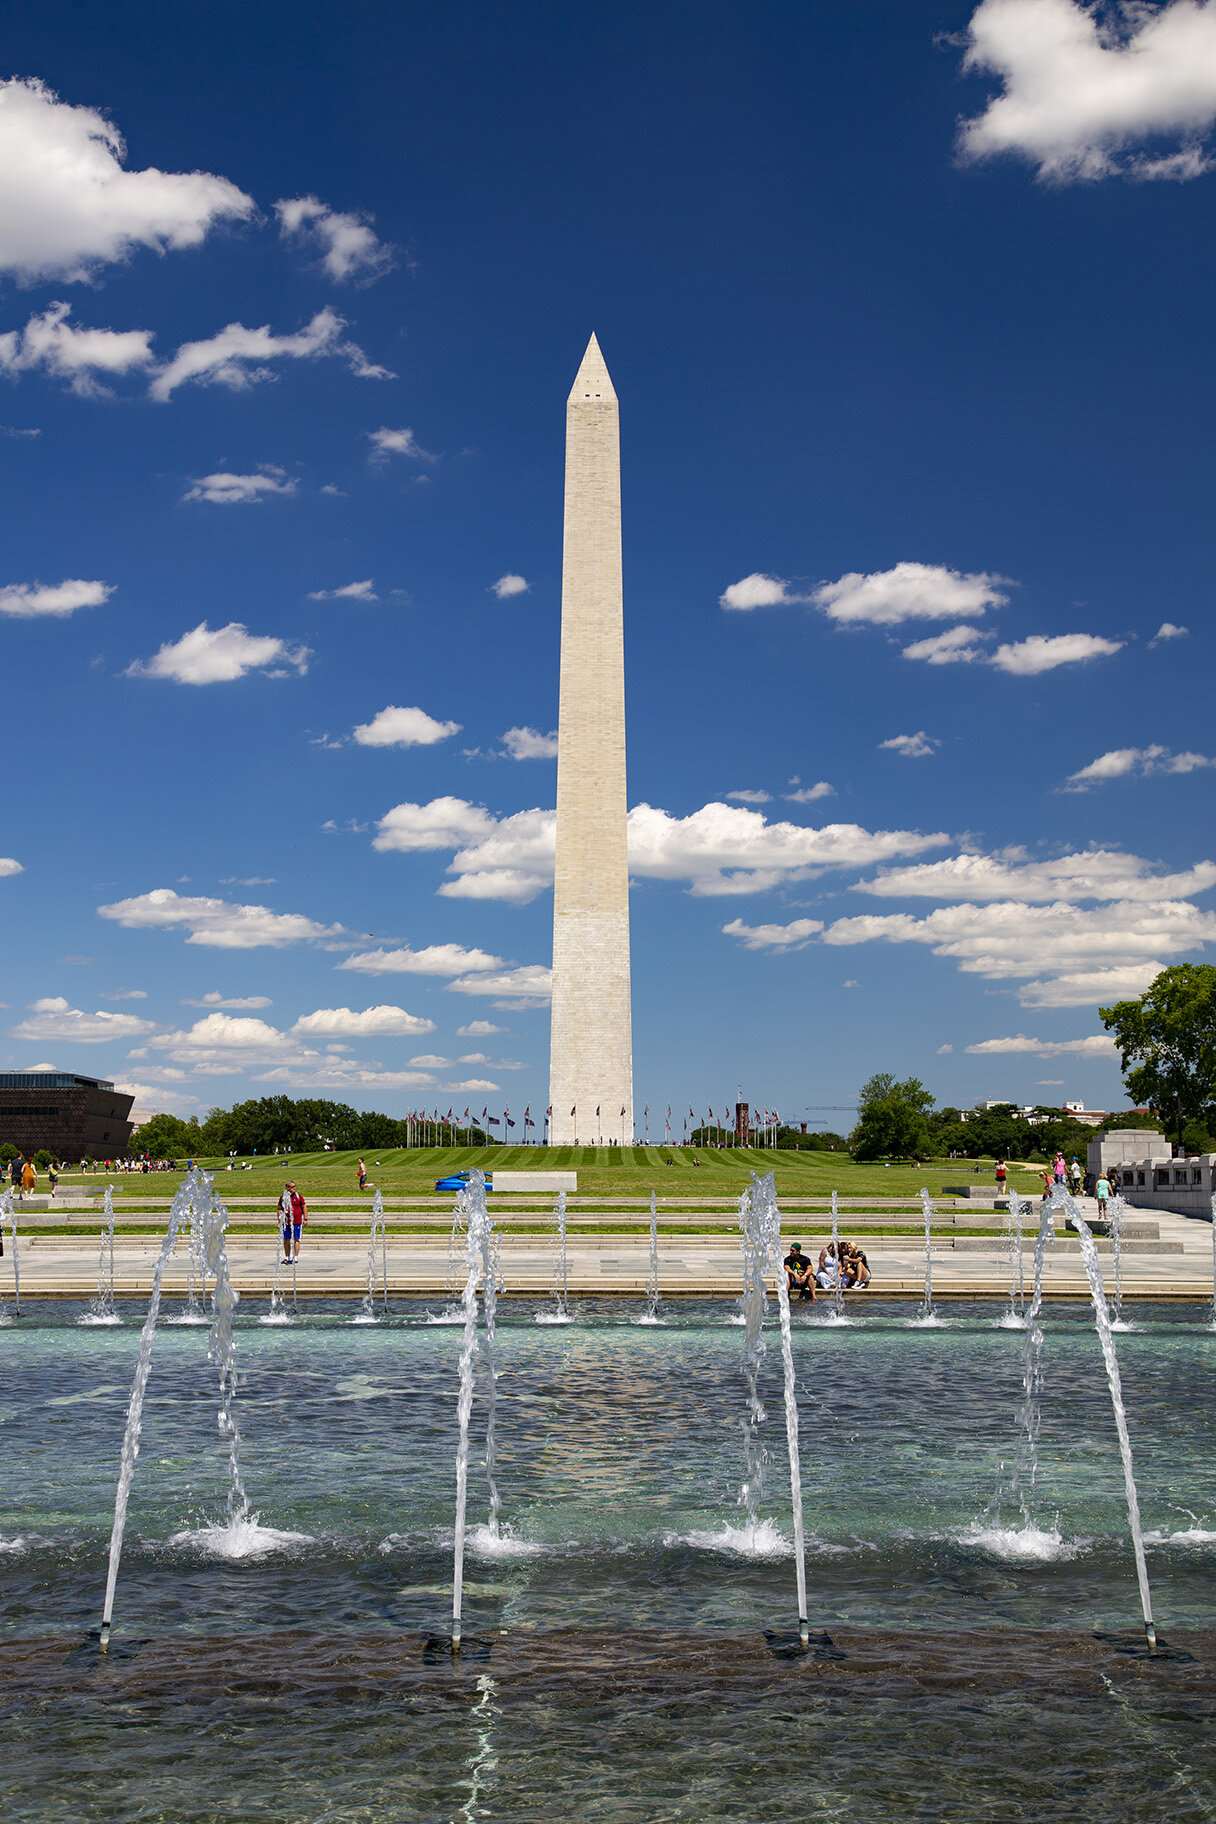  The Washington Monument, Washington, DC 